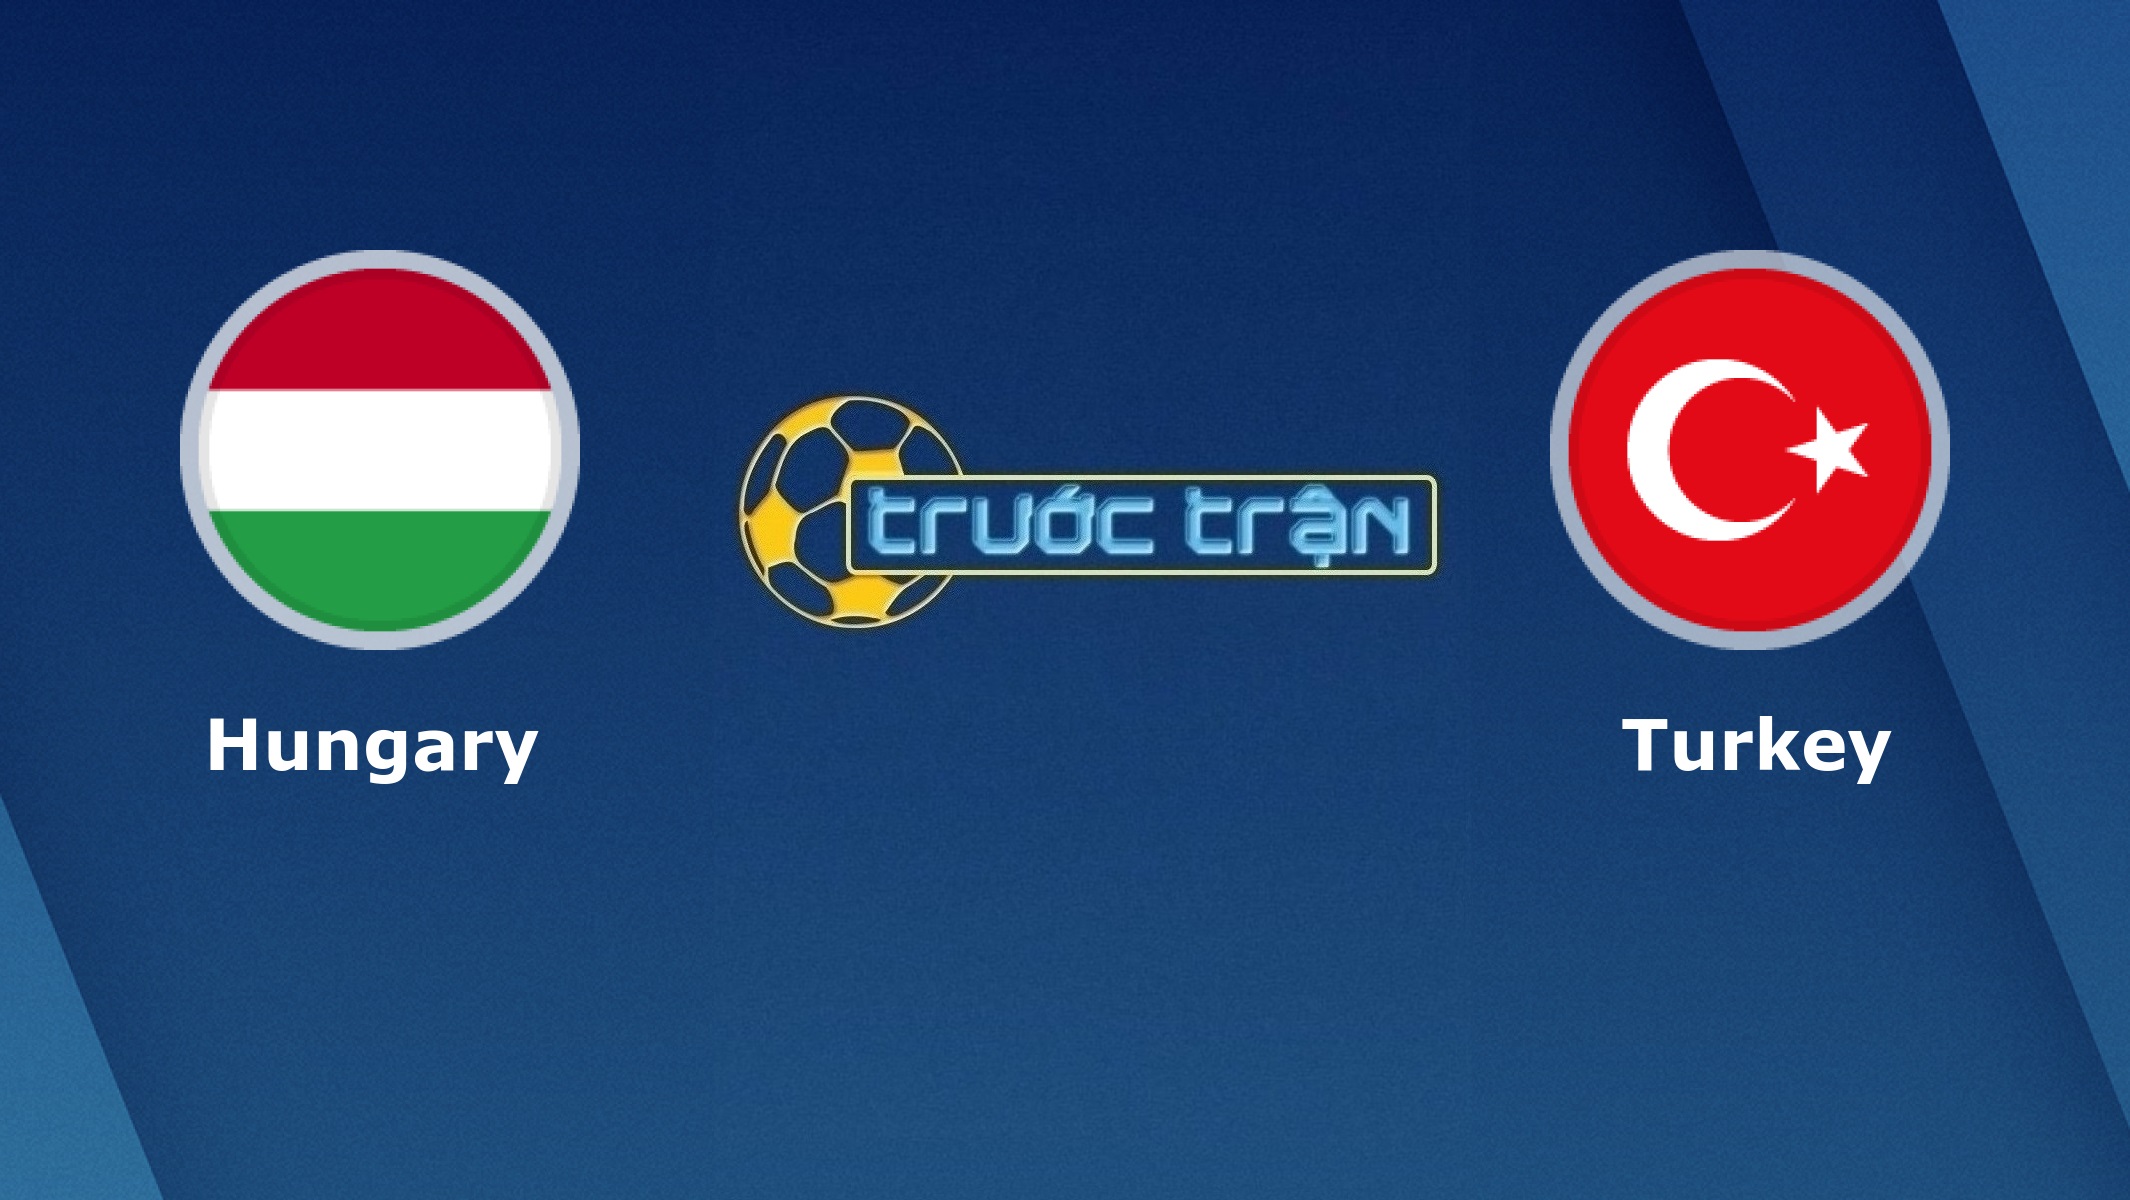 Hungary vs Thổ Nhĩ Kỳ – Tip kèo bóng đá hôm nay – 02h45 19/11/2020